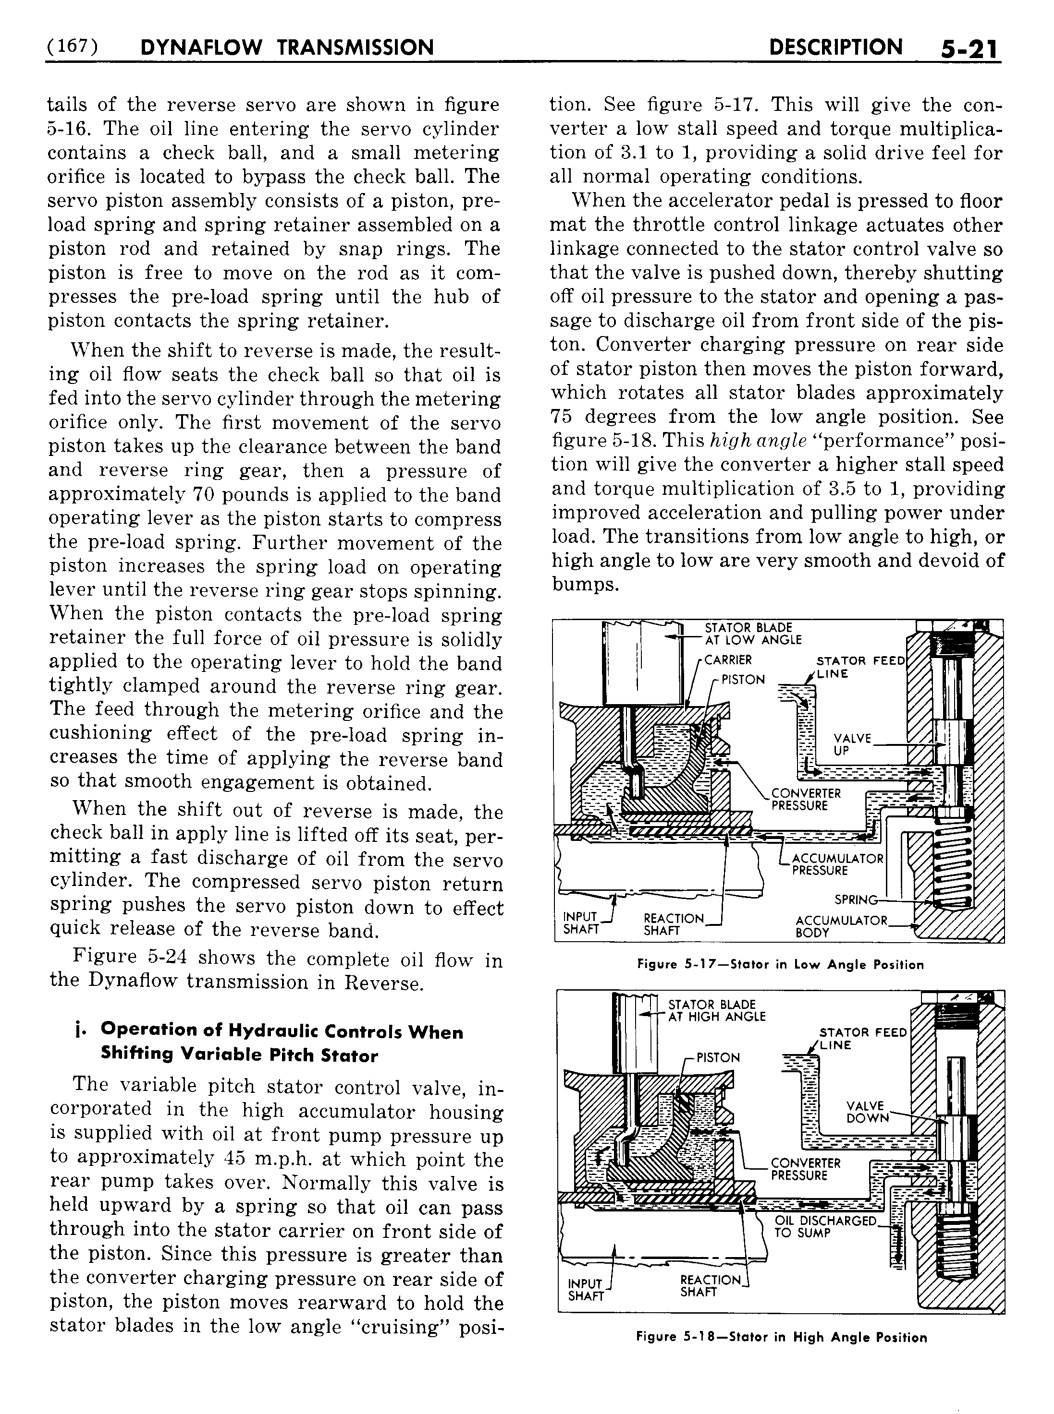 n_06 1956 Buick Shop Manual - Dynaflow-021-021.jpg